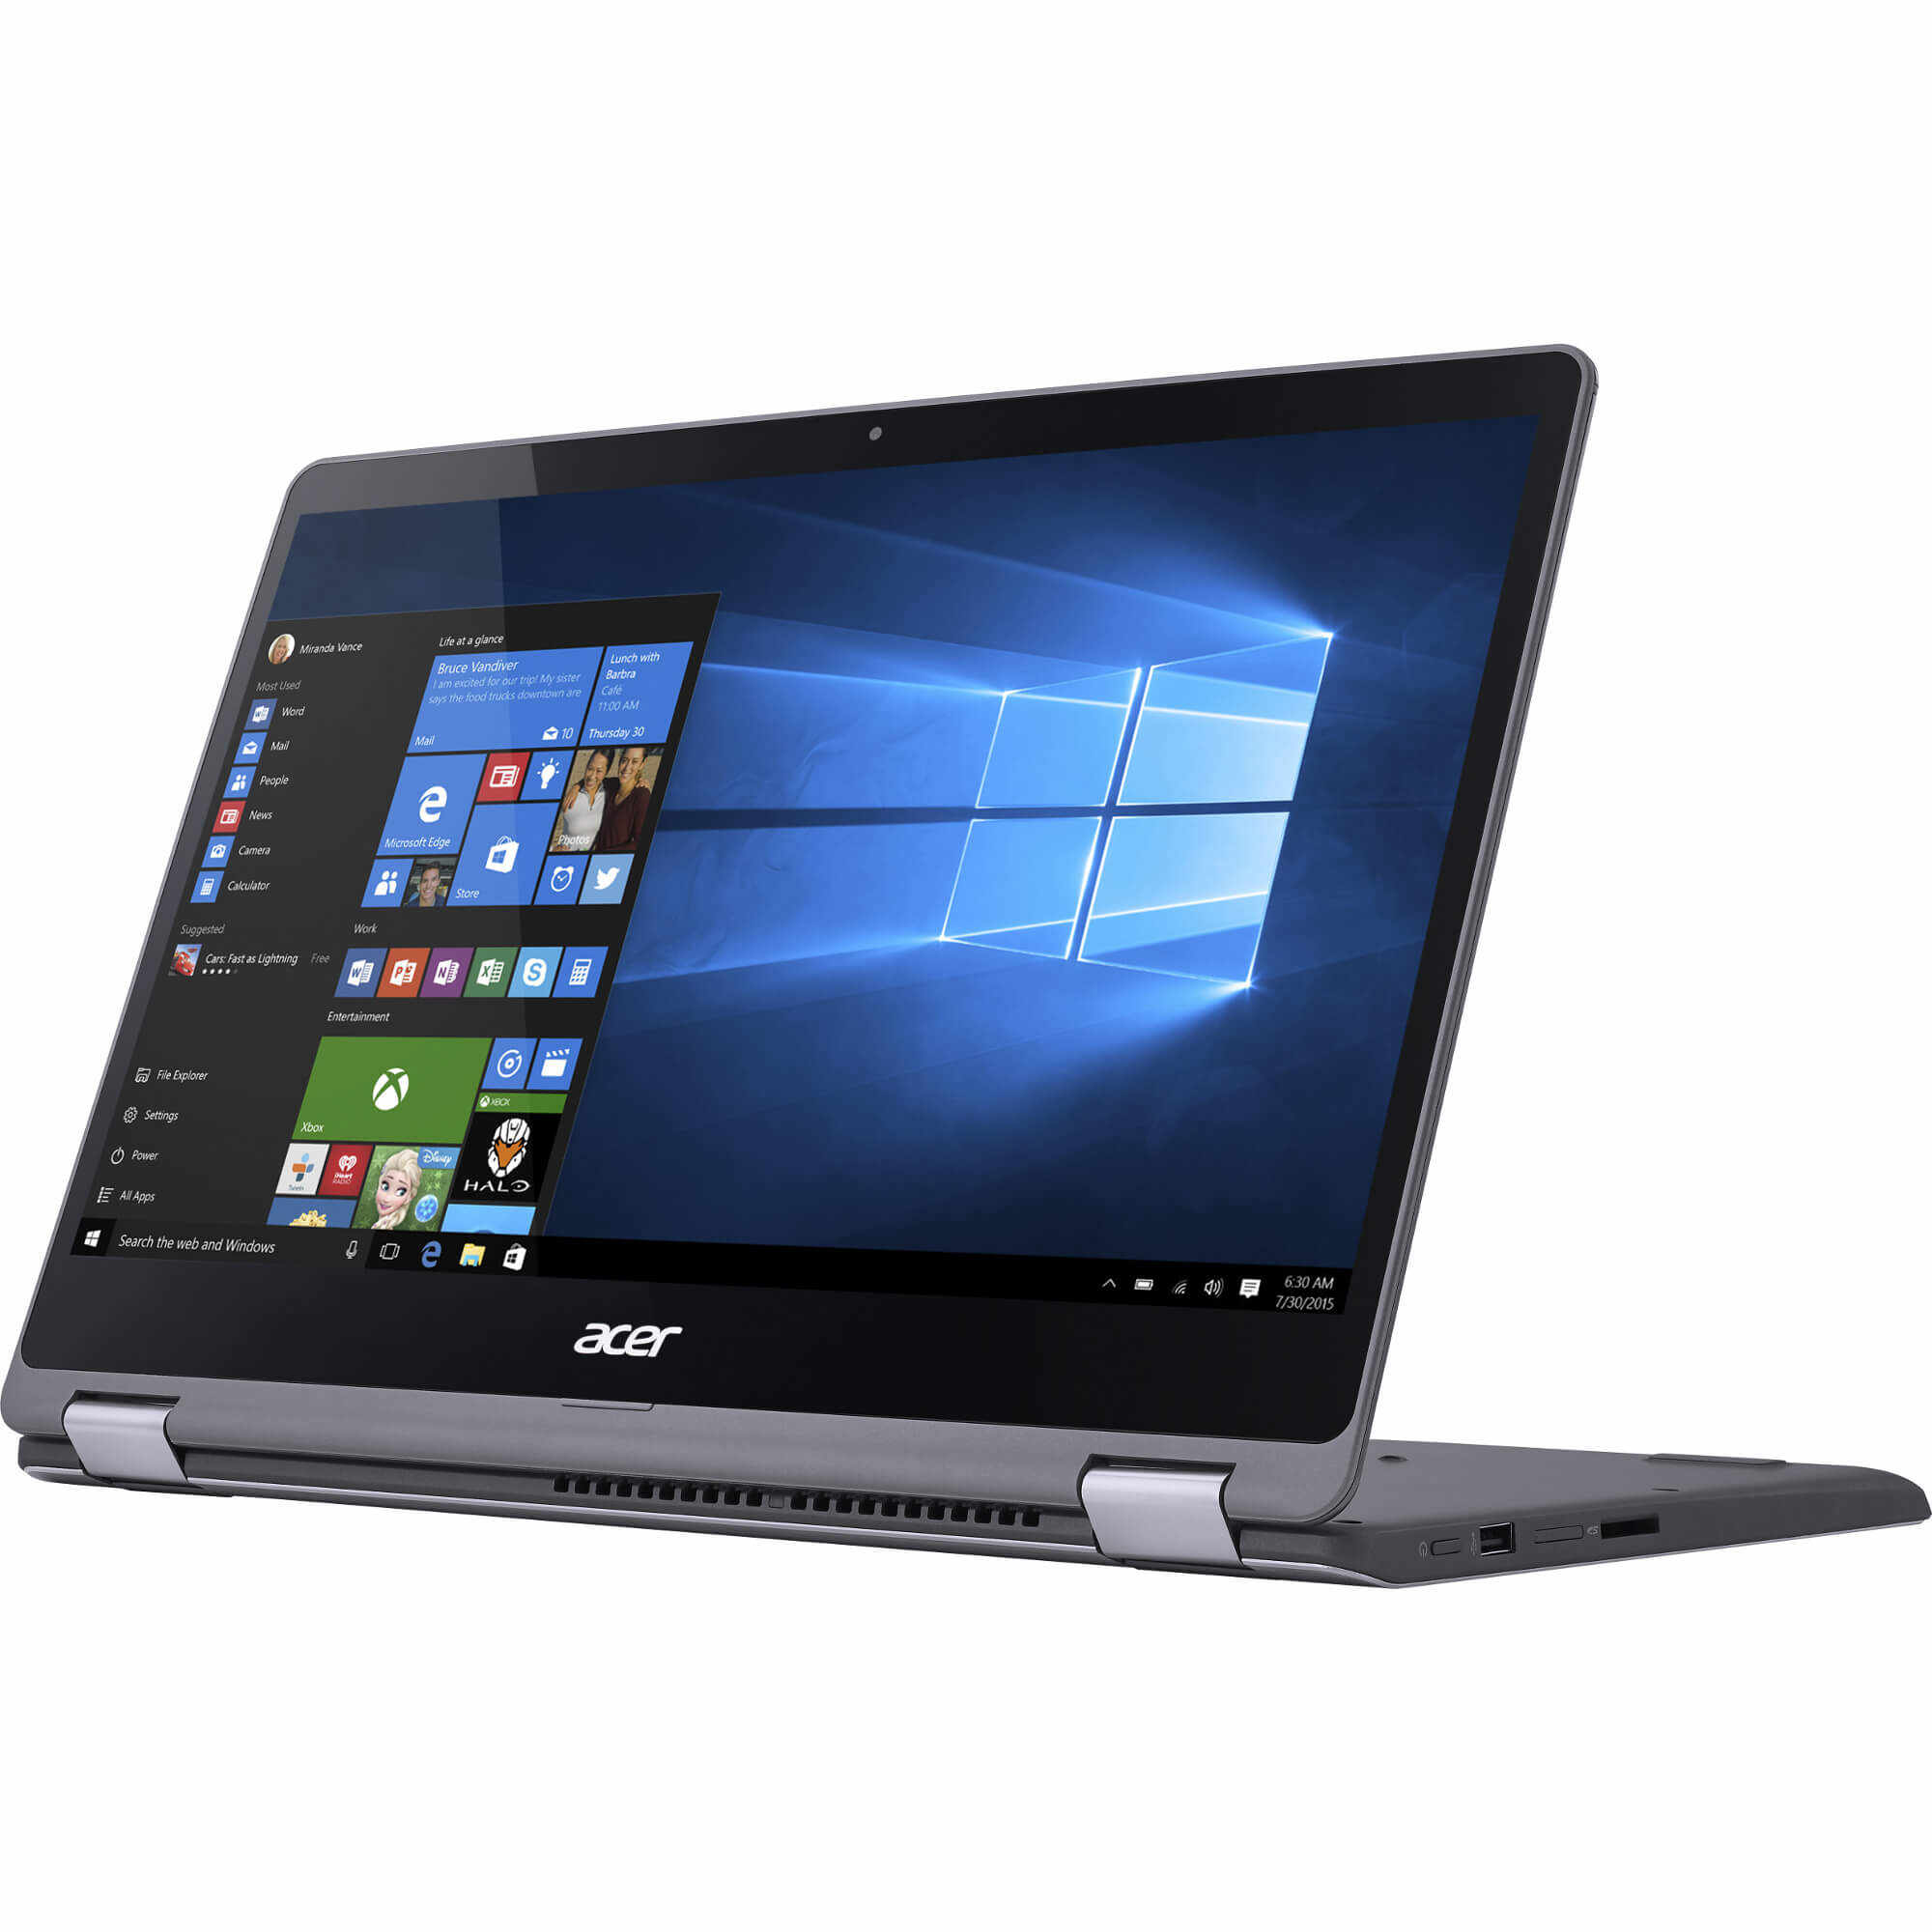 Laptop 2 in 1 Acer Aspire R5-571TG-71N9, Intel Core i7-6500U, 8GB DDR4, HDD 1TB + SSD 256GB, nVidia GeForce GT 940MX 2GB, Windows 10